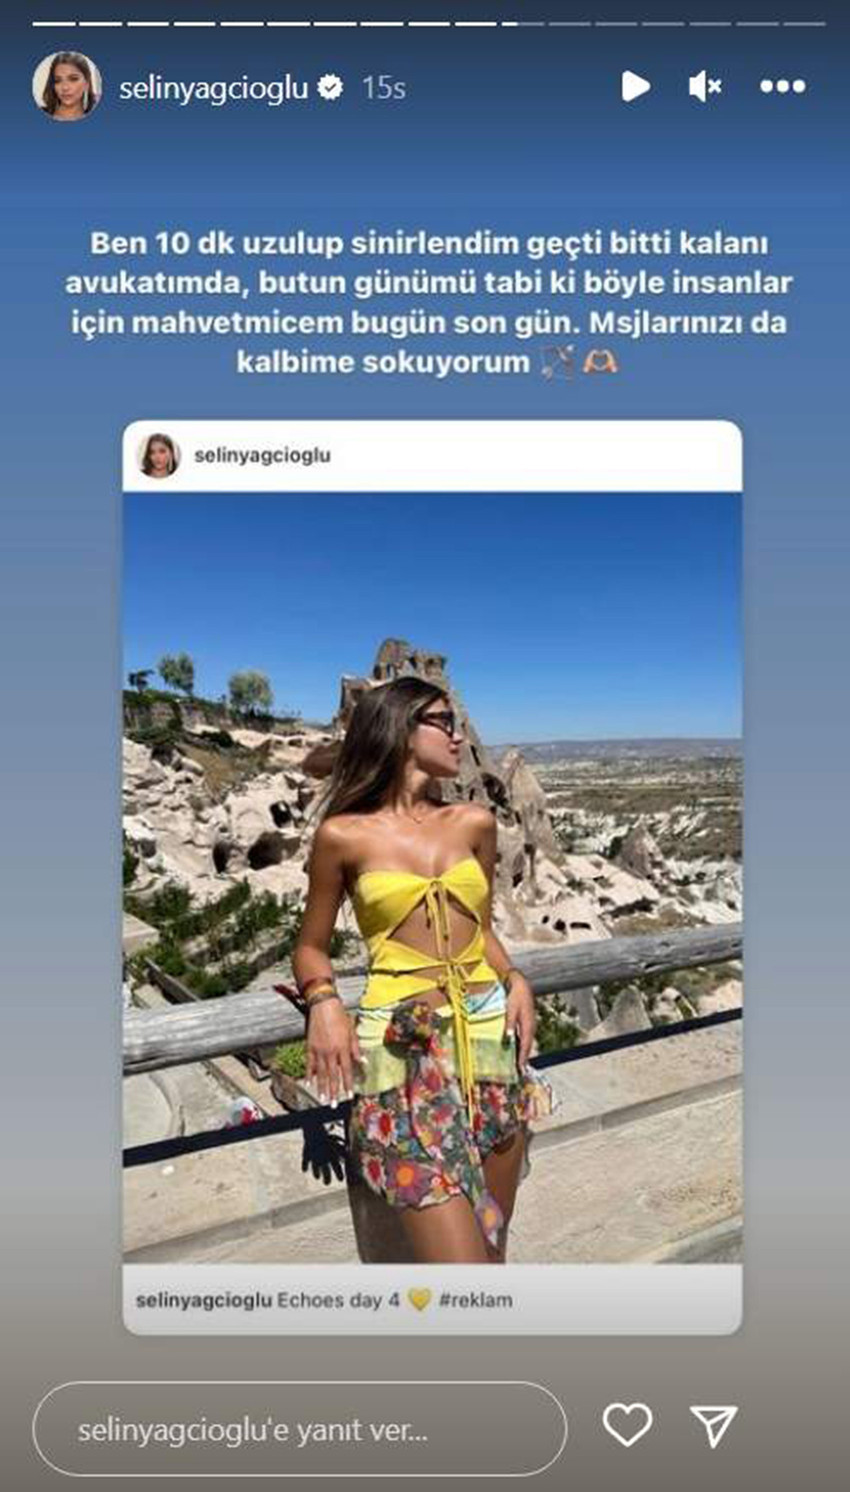 Kısa bir süre önce Berk Atan ile birlikteliğini noktalayarak yeni bir aşka yelken açan sosyal medyanın ünlü isimlerinden Selin Yağcıoğlu, sevgilisi Allan Hakko ile paylaştığı fotoğrafa gelen küfürlü yorumlar sonrası çılgına döndü.